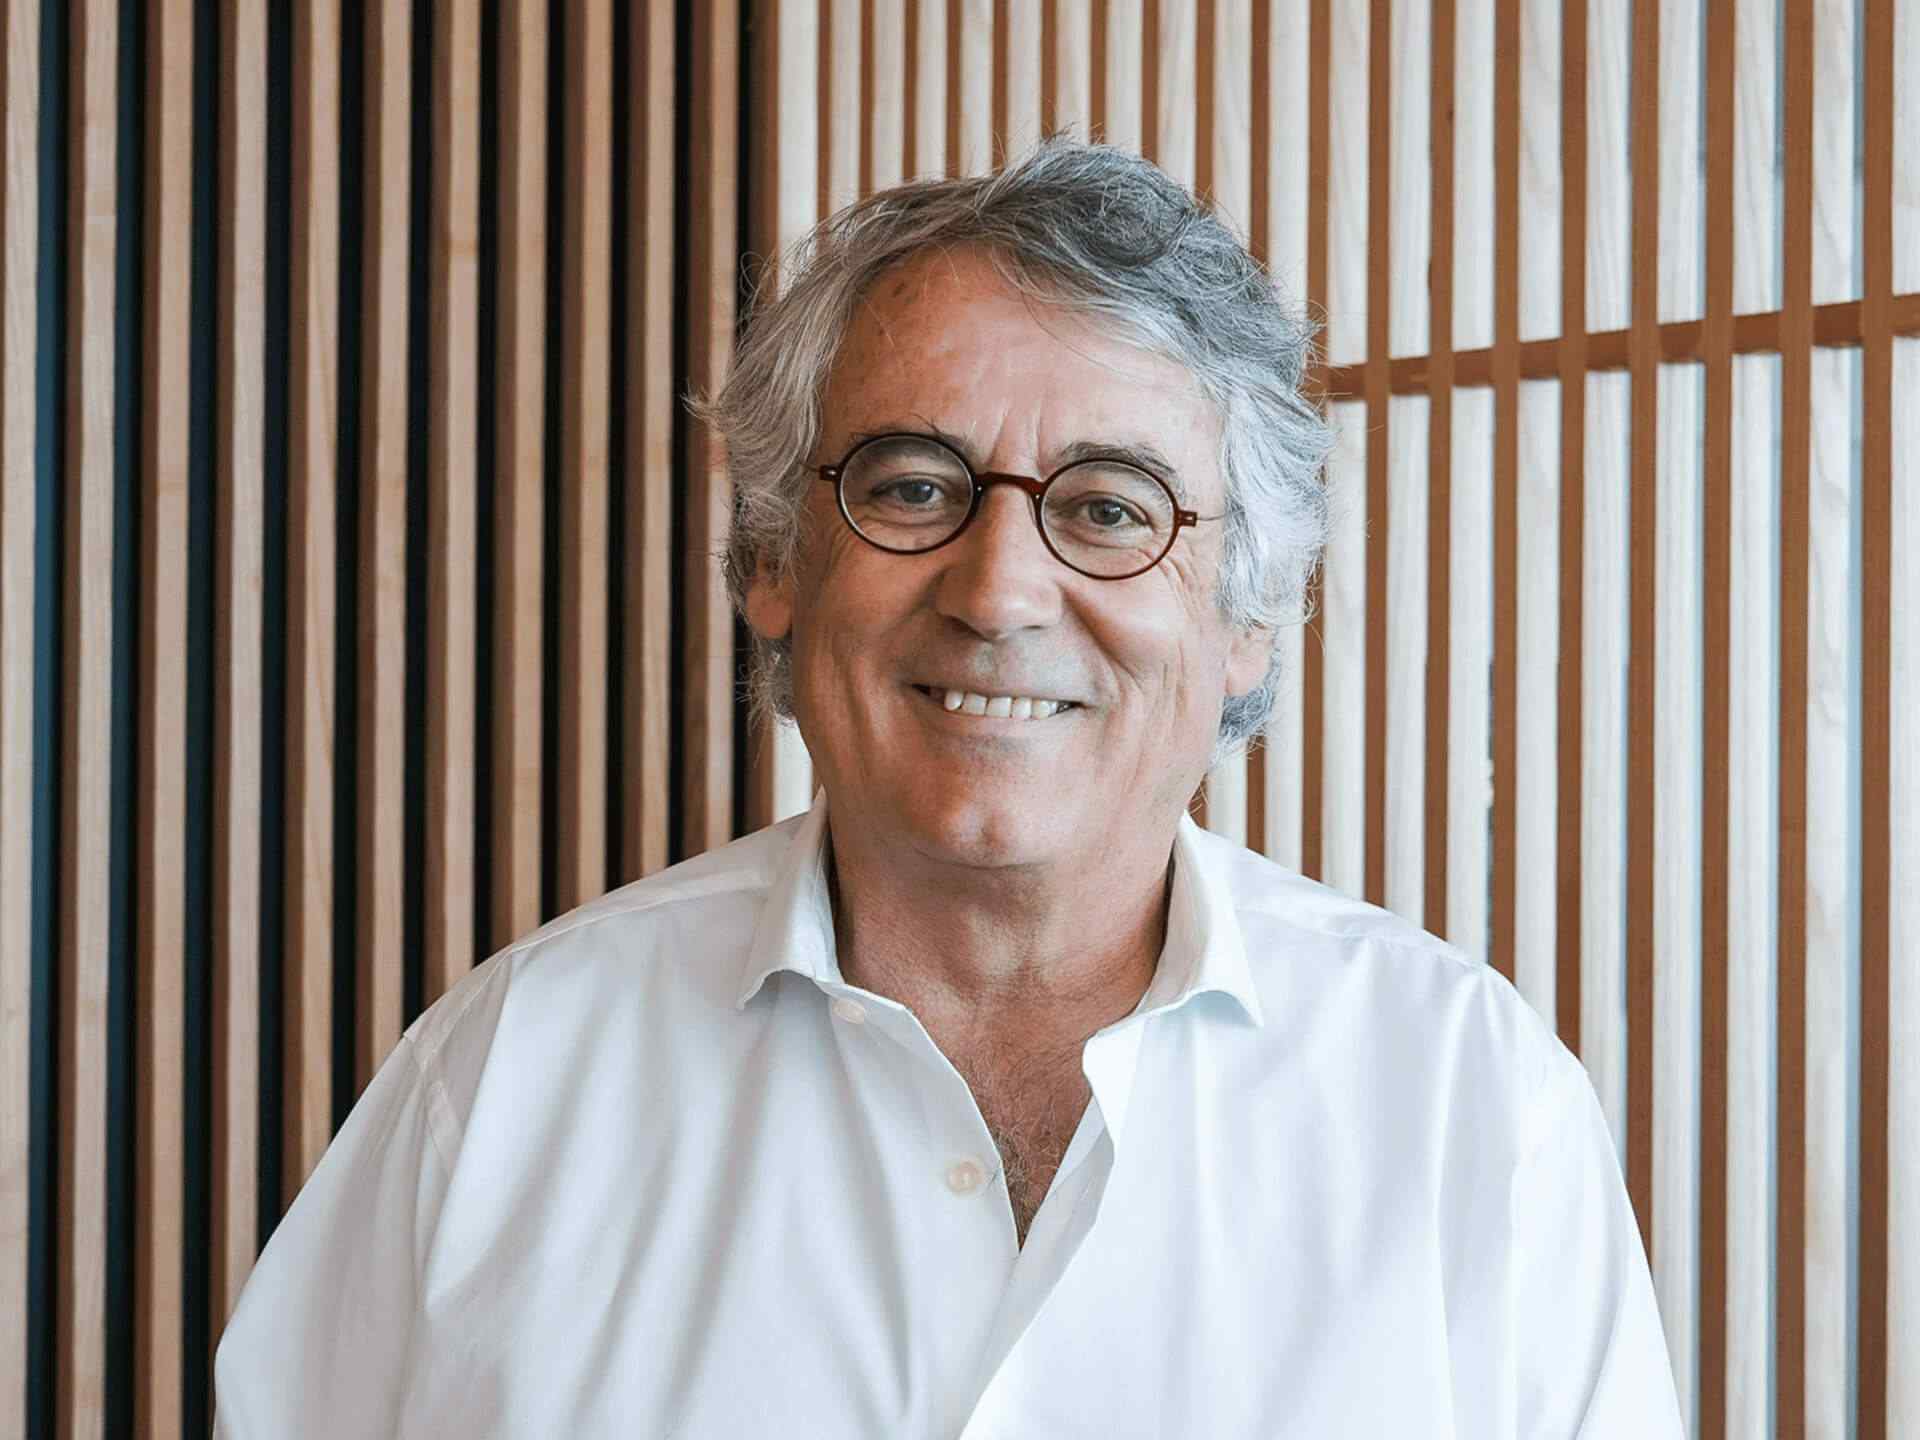 Dr. Fernando Cassio